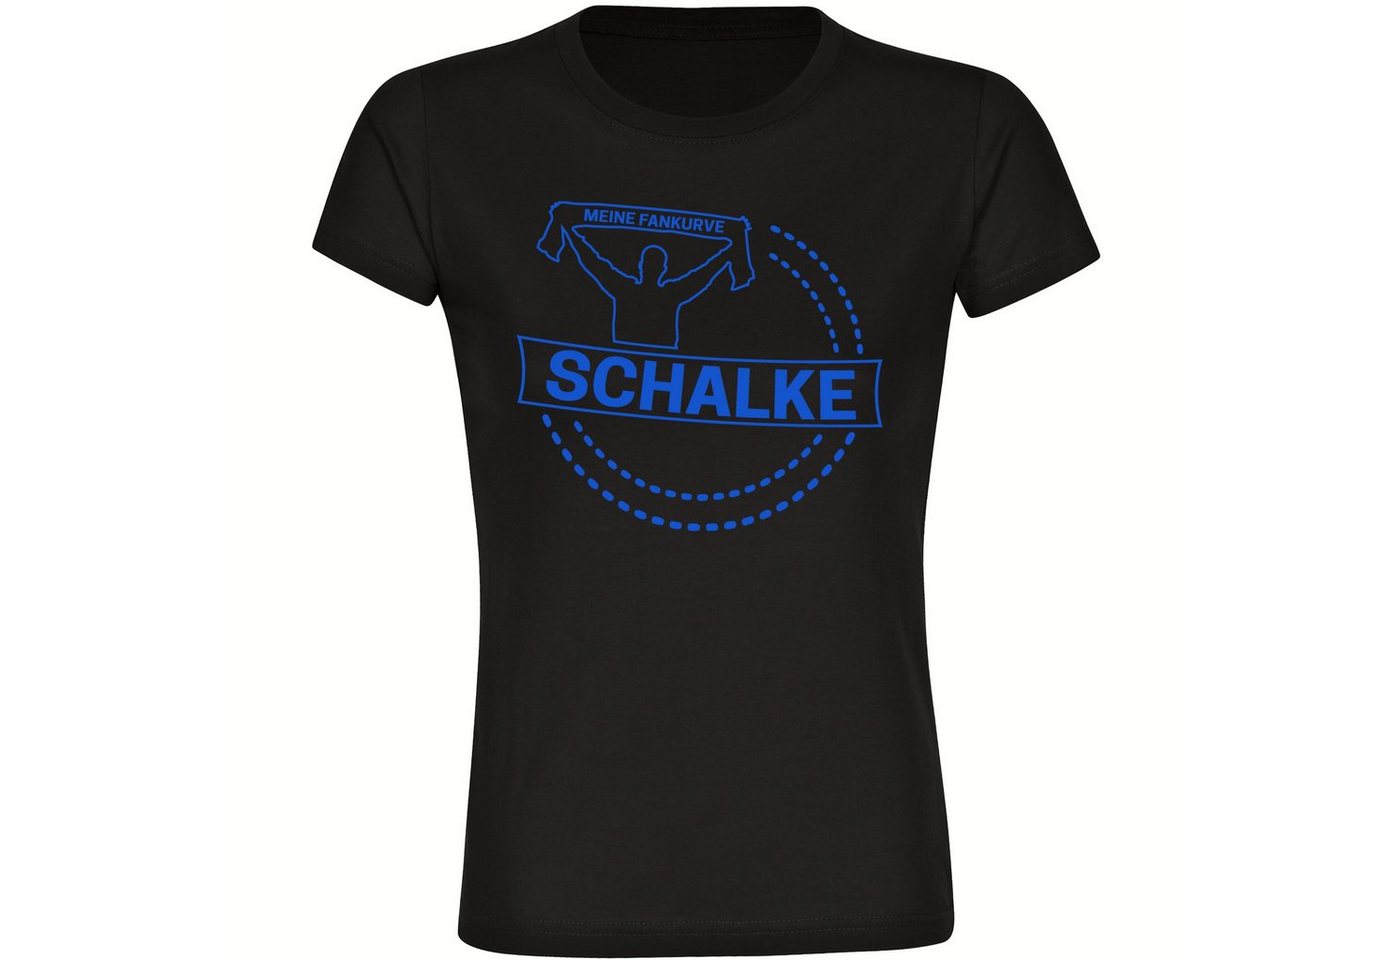 multifanshop T-Shirt Damen Schalke - Meine Fankurve - Frauen von multifanshop